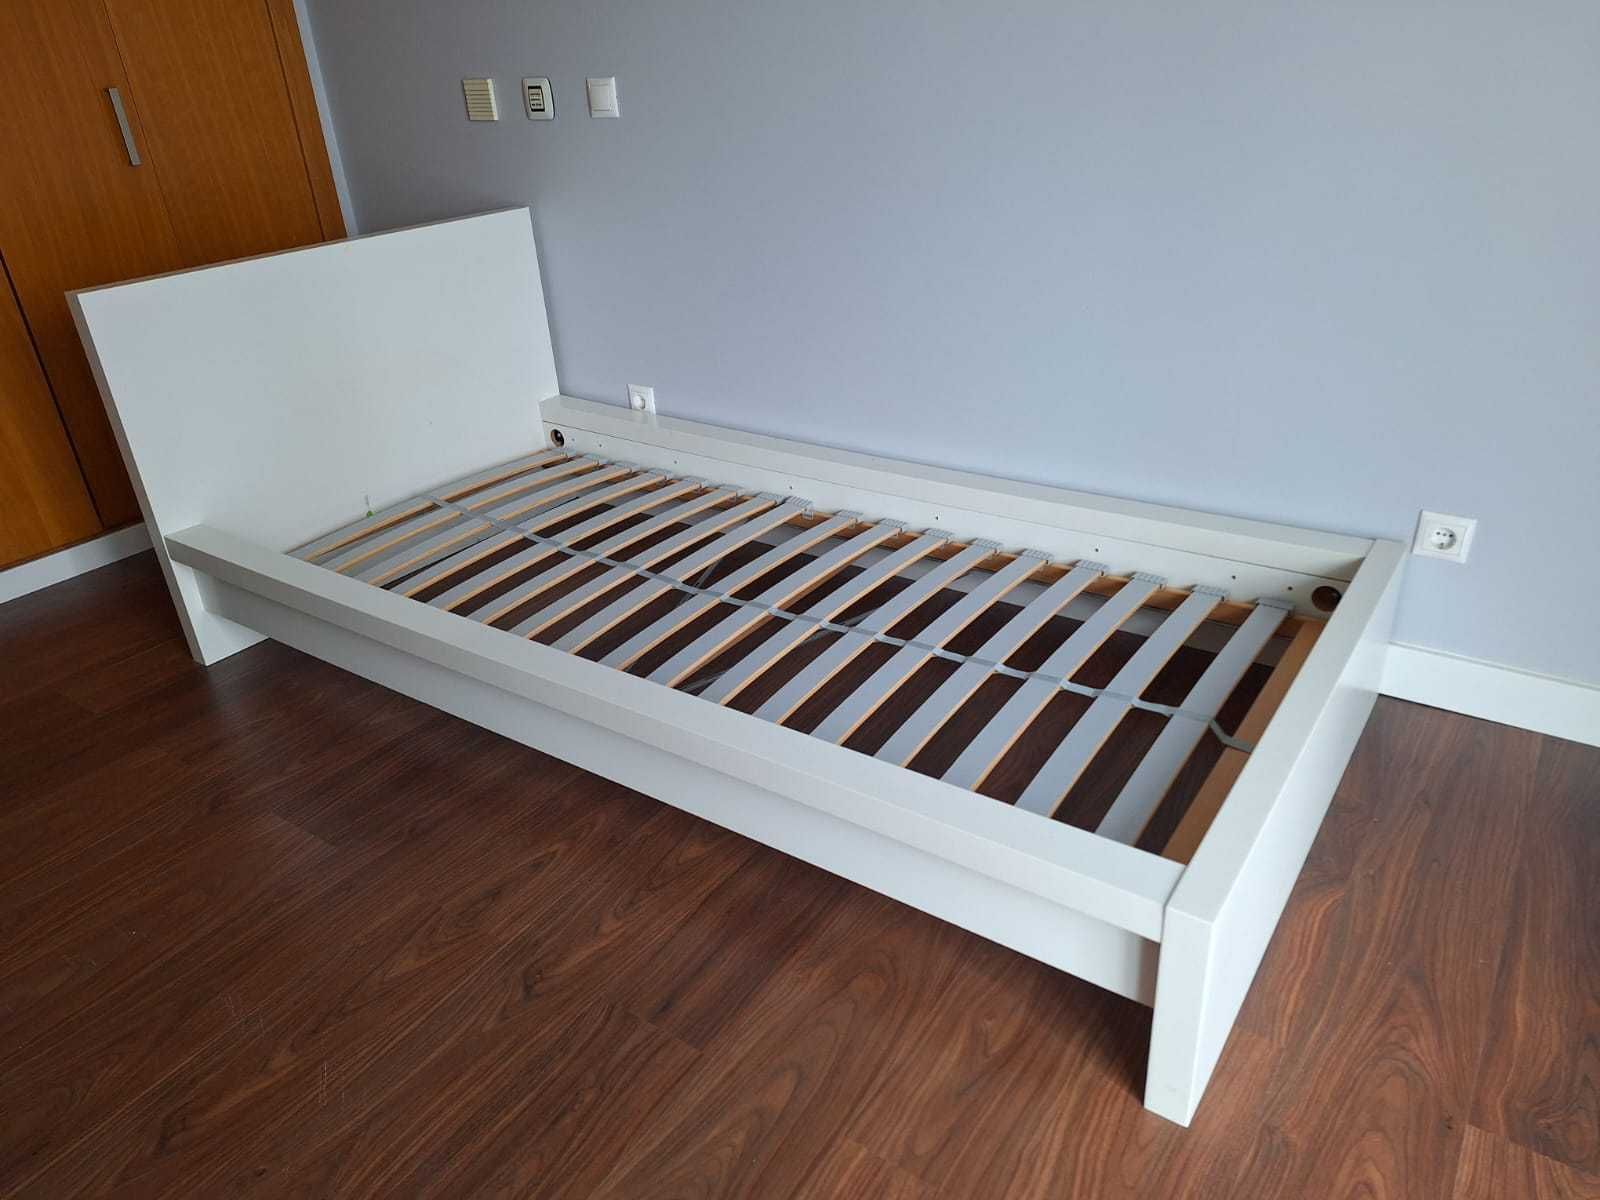 Cama completa 90x200 cm (Estrutura cama + estrado de ripas + colchão)